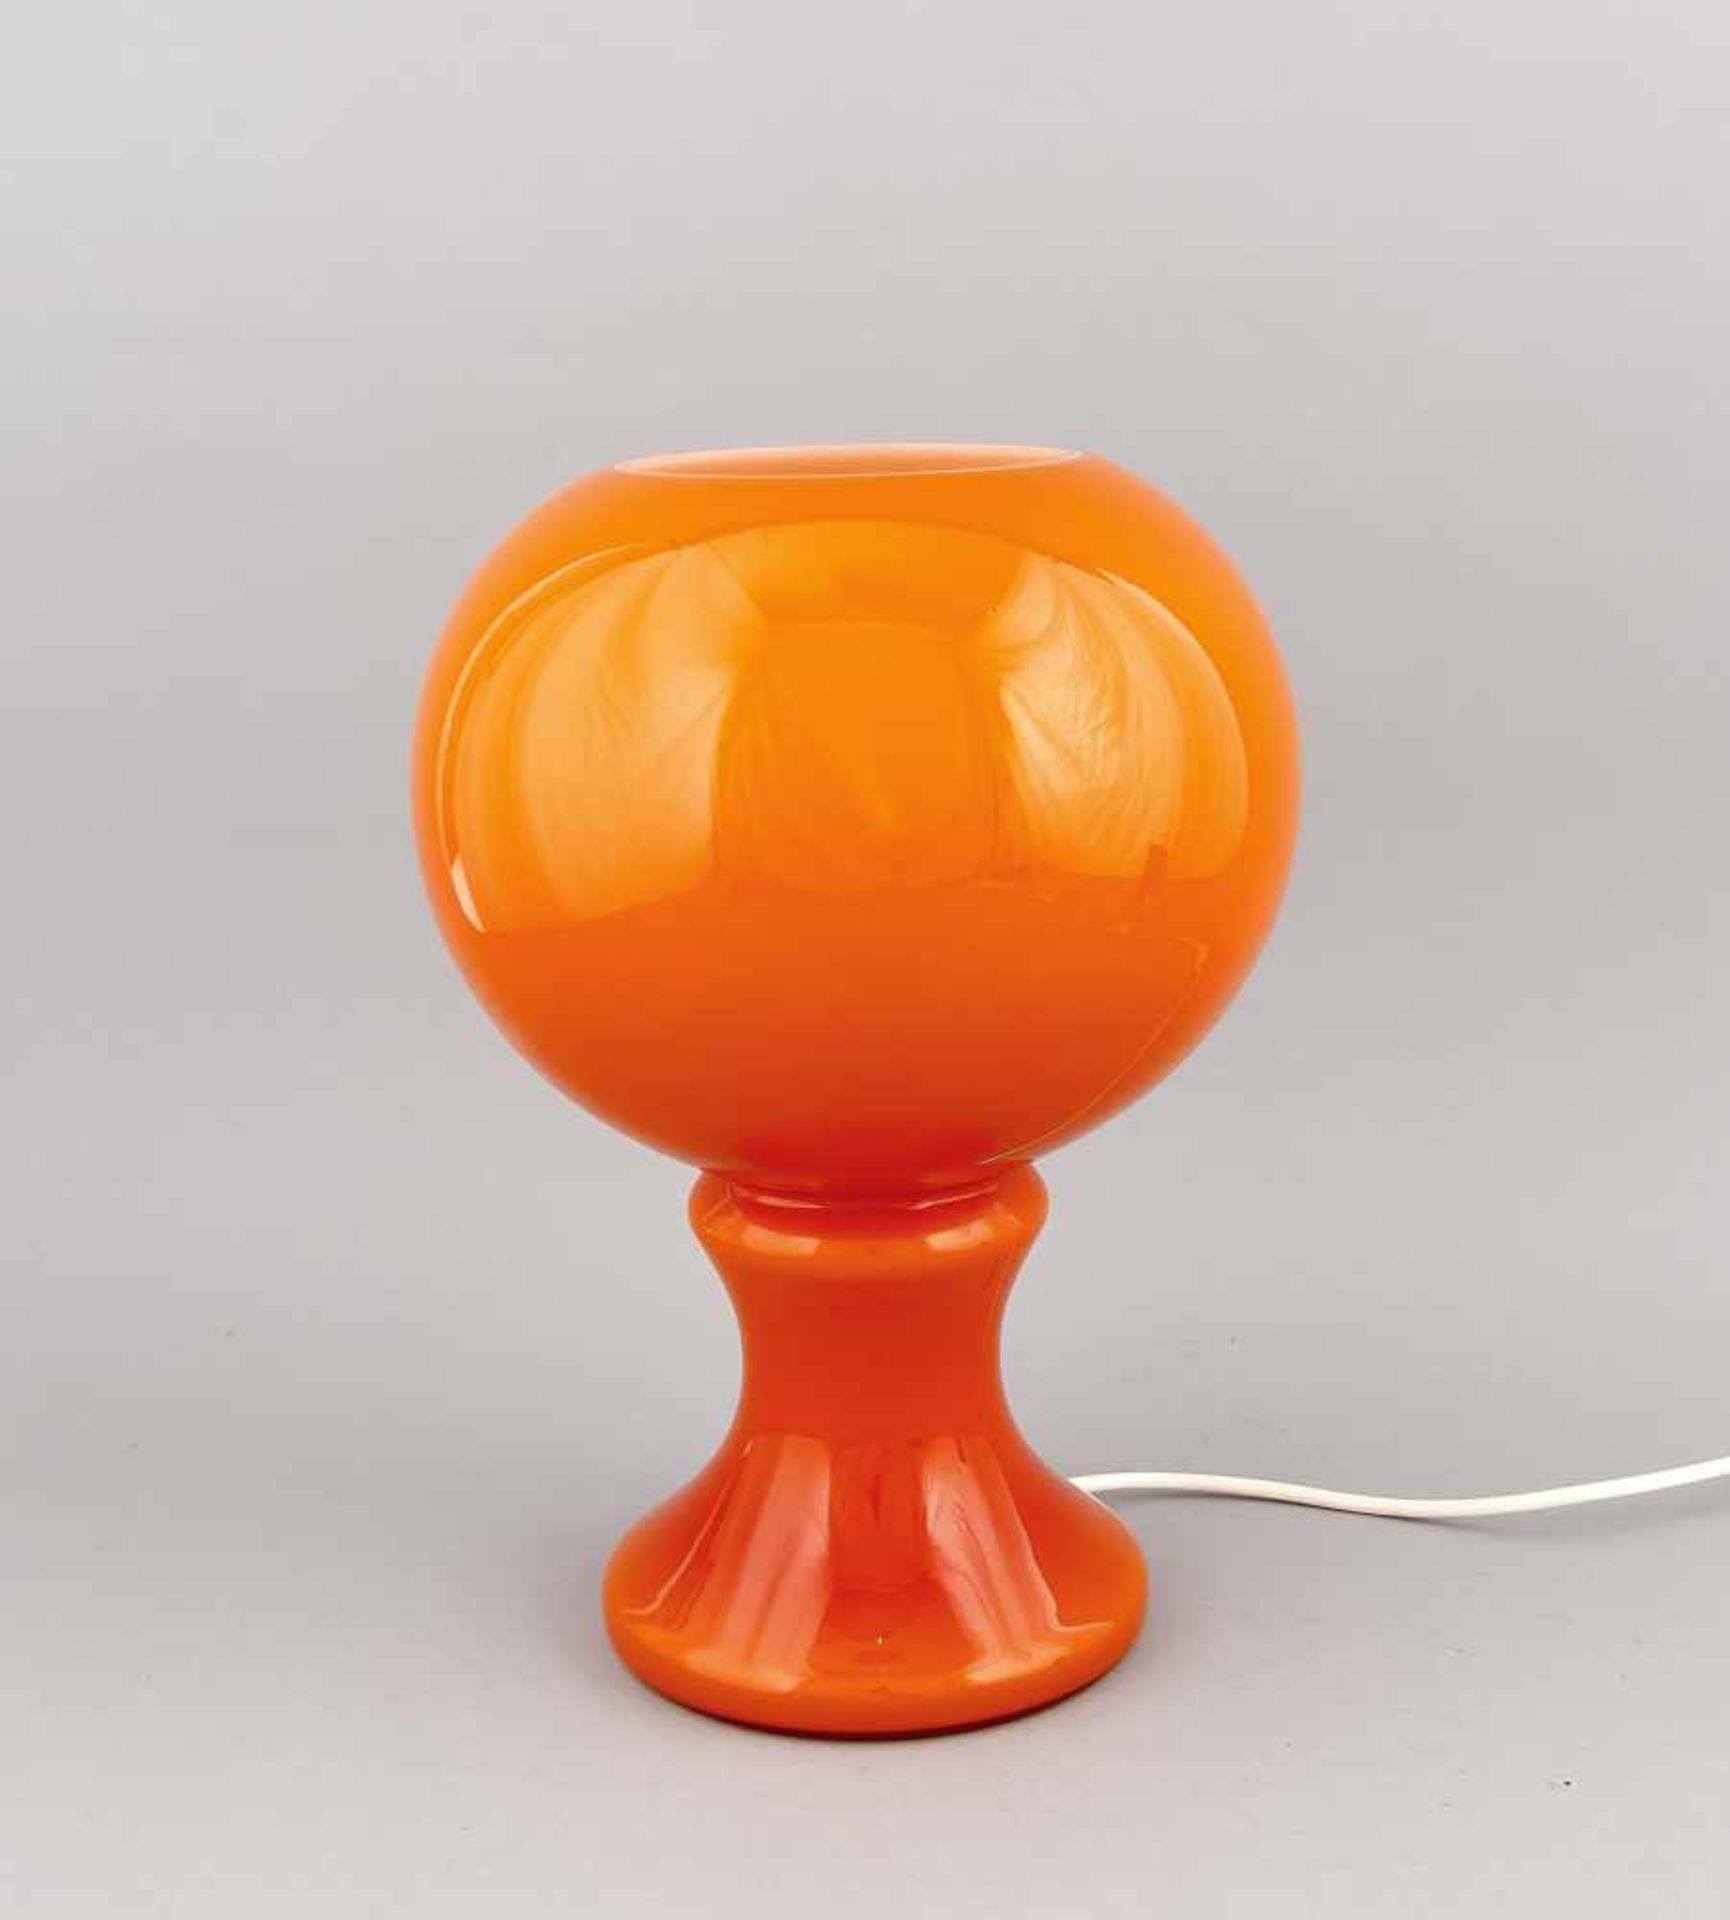 Tischlampe, Deutschland?, 1970er Jahre, orangener Glaskorpus mit rundem, leichtbalustriertem Fuß.